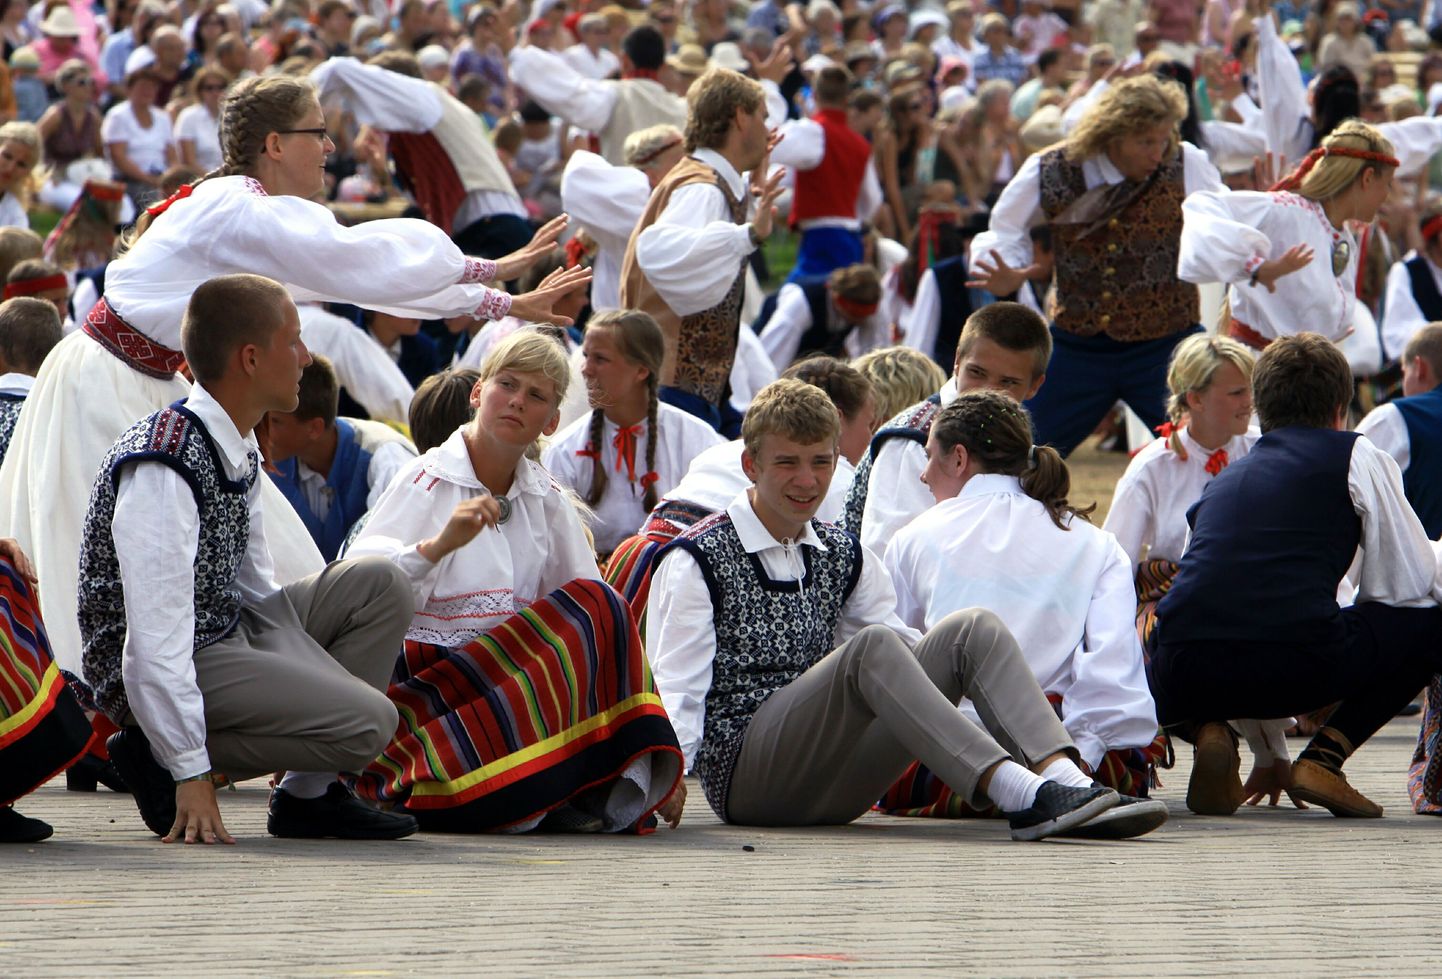 Noored tantsijad on teinud laulu- ja tantsupeo õnnestumise nimel Tallinnas proove esmaspäevast saadik.